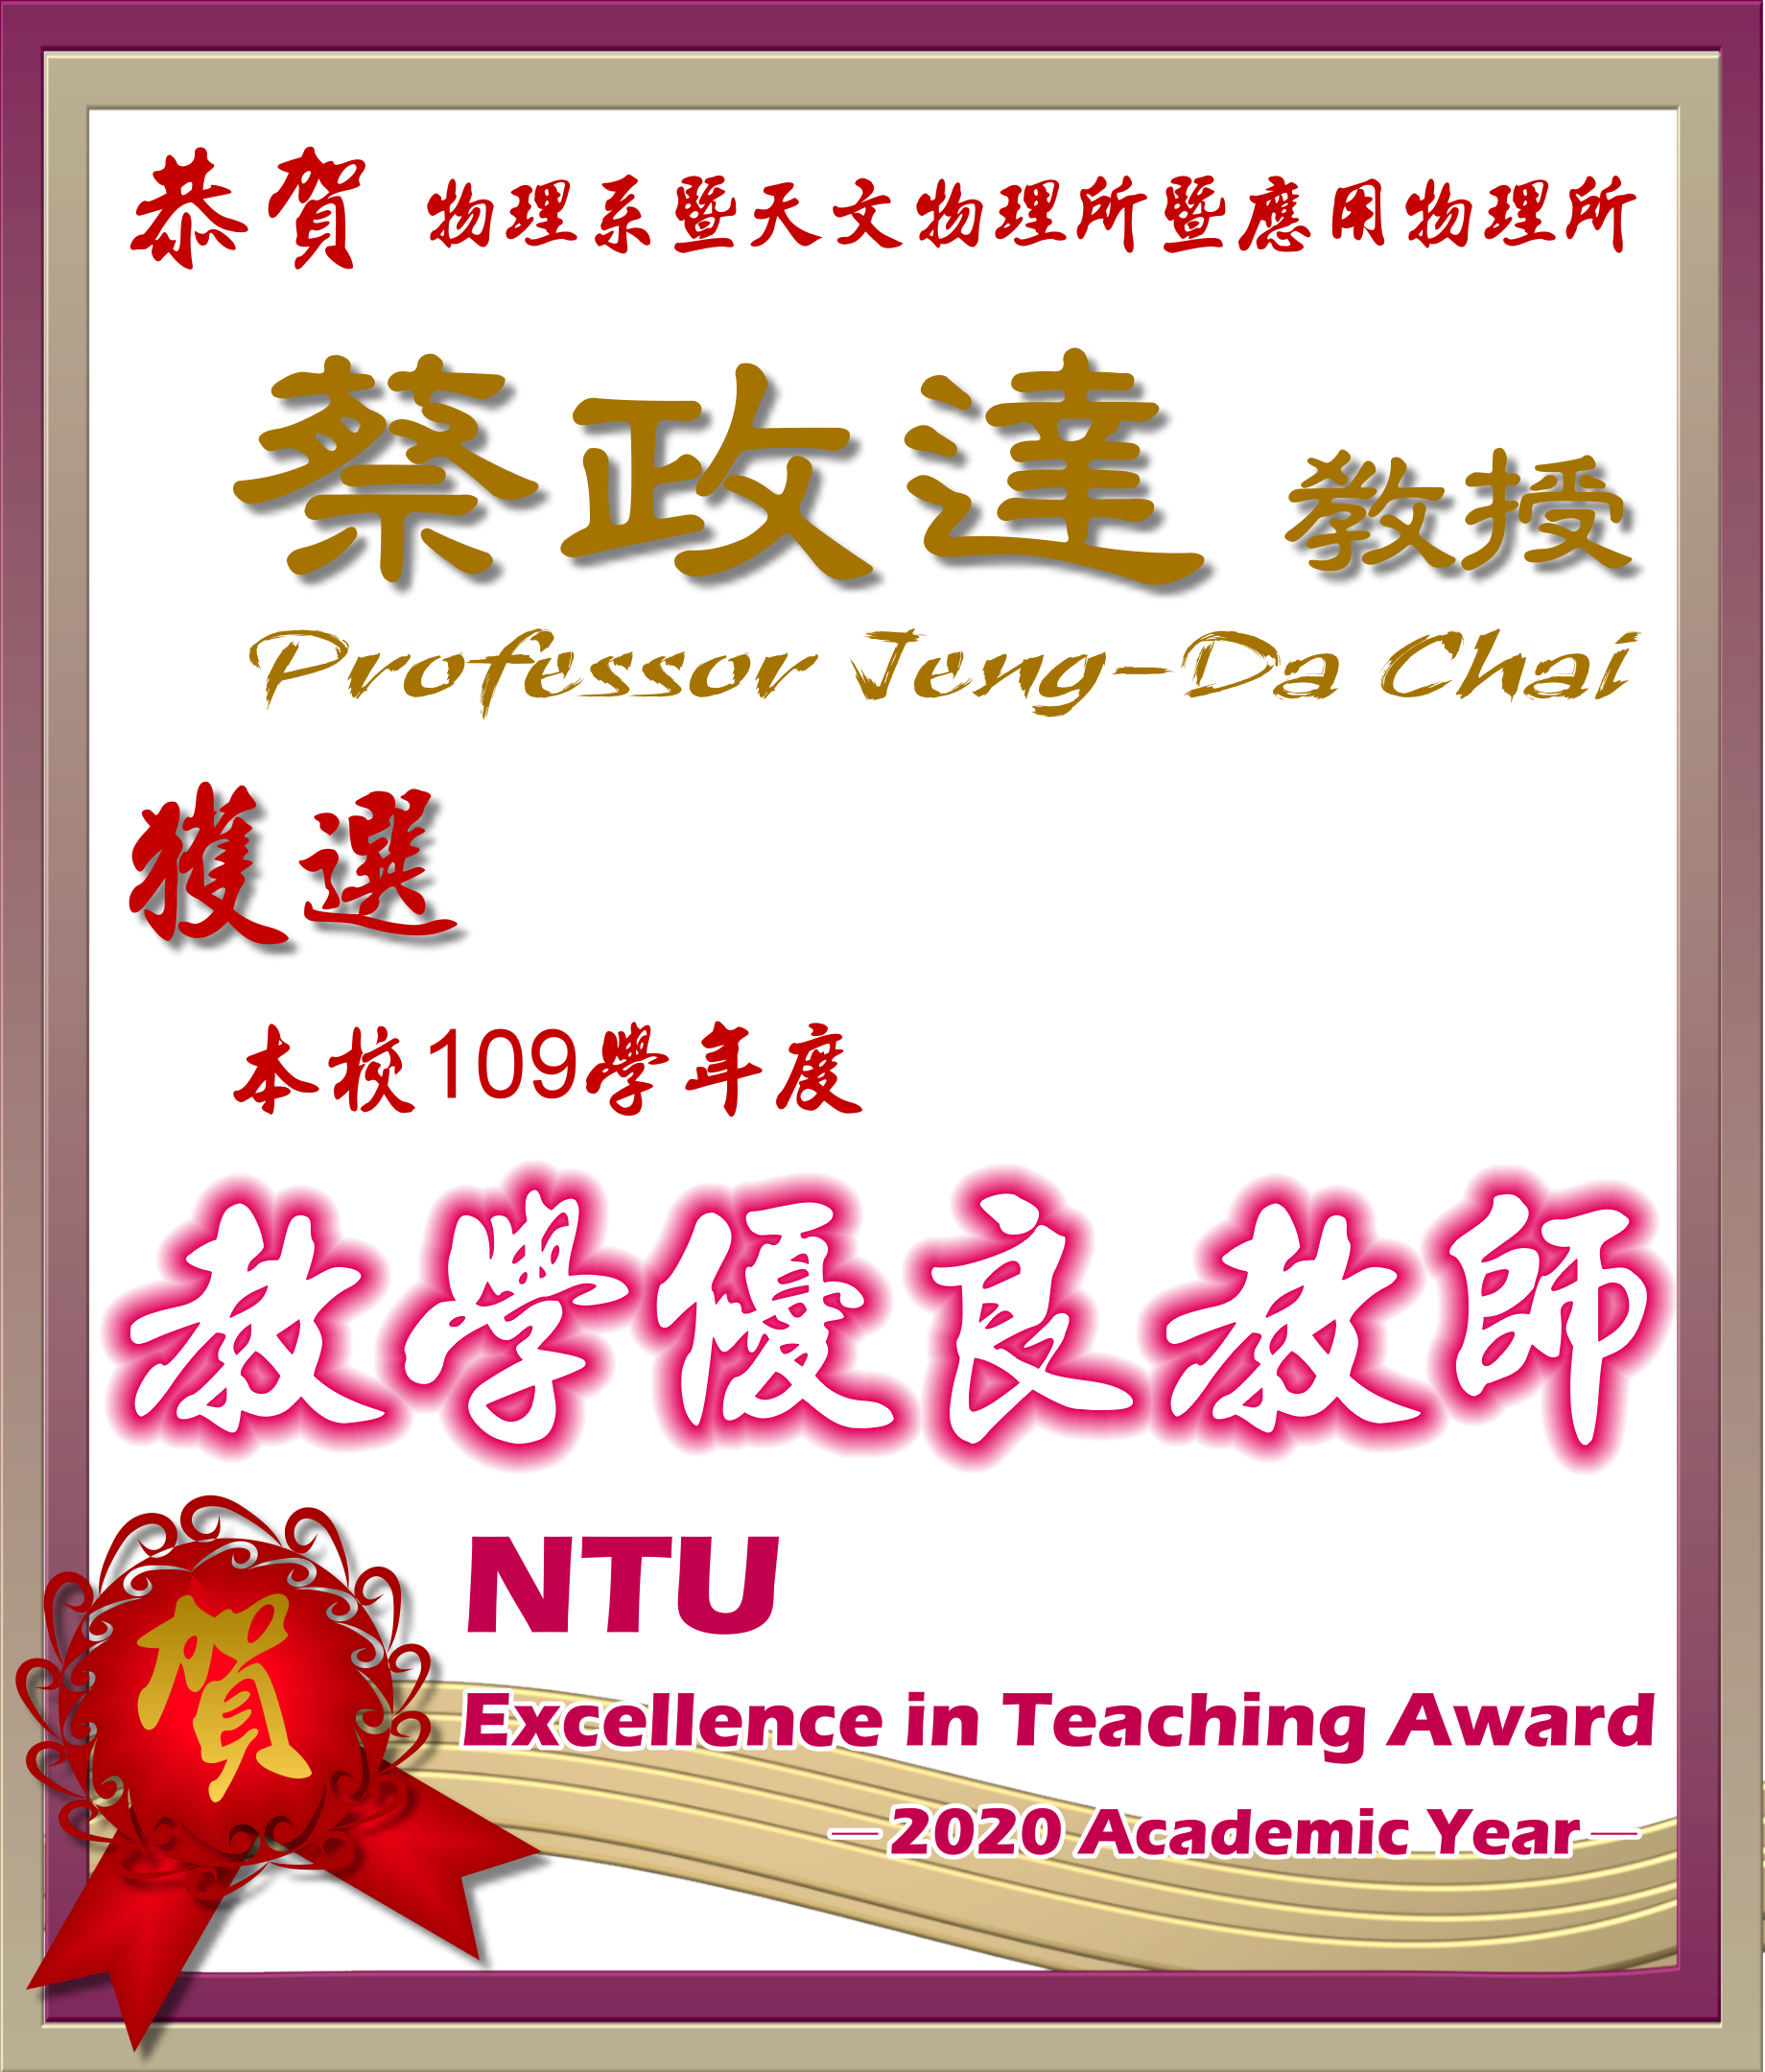 《賀》本系 蔡政達 教授 Prof. Jeng-Da Chai 獲選 109學年度《教學優良教師》(NTU Excellence in Teaching Award)